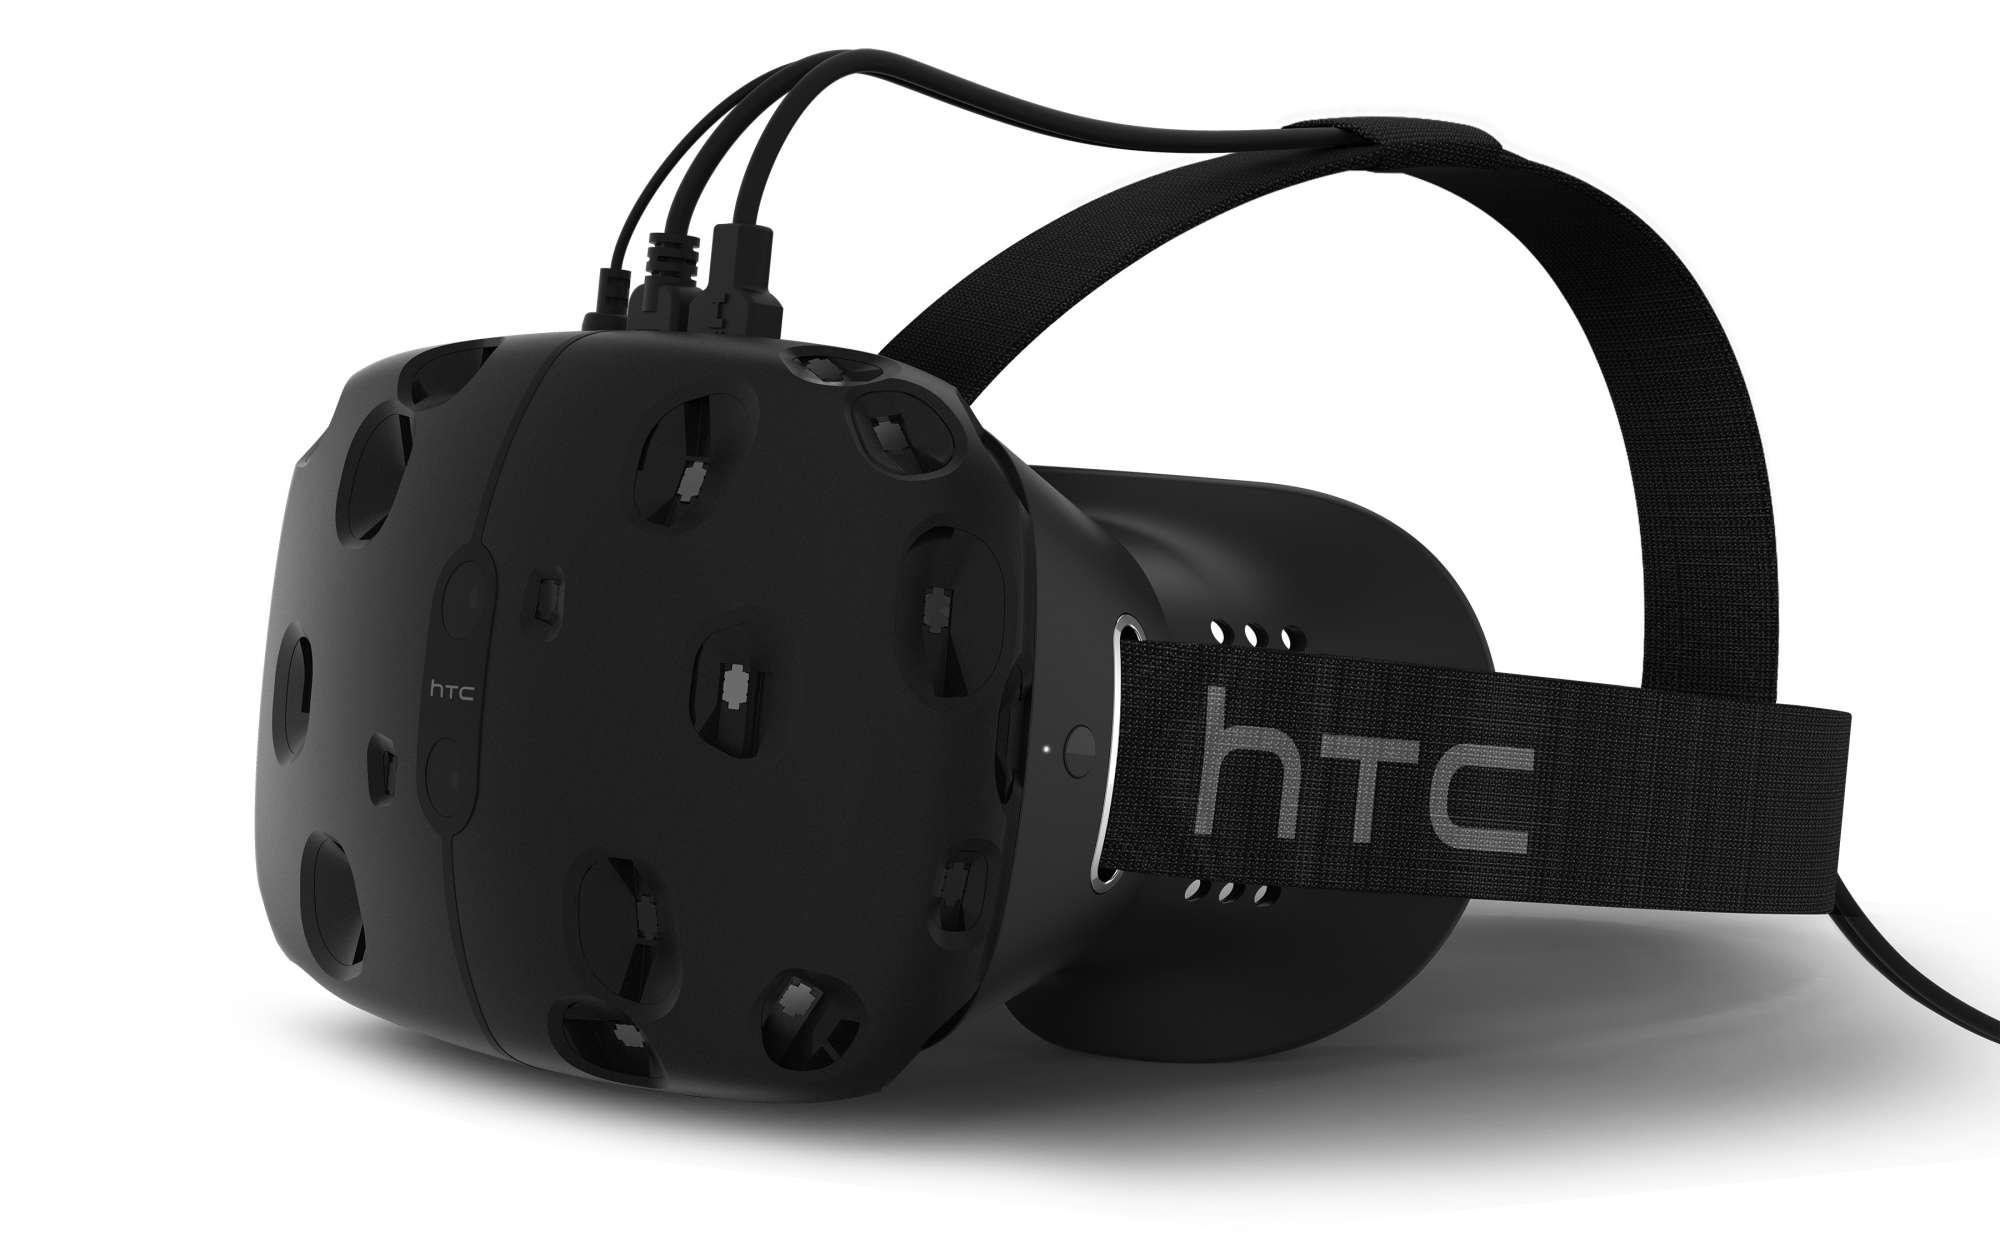 Vendas do HTC Vive começam no dia 29 de fevereiro